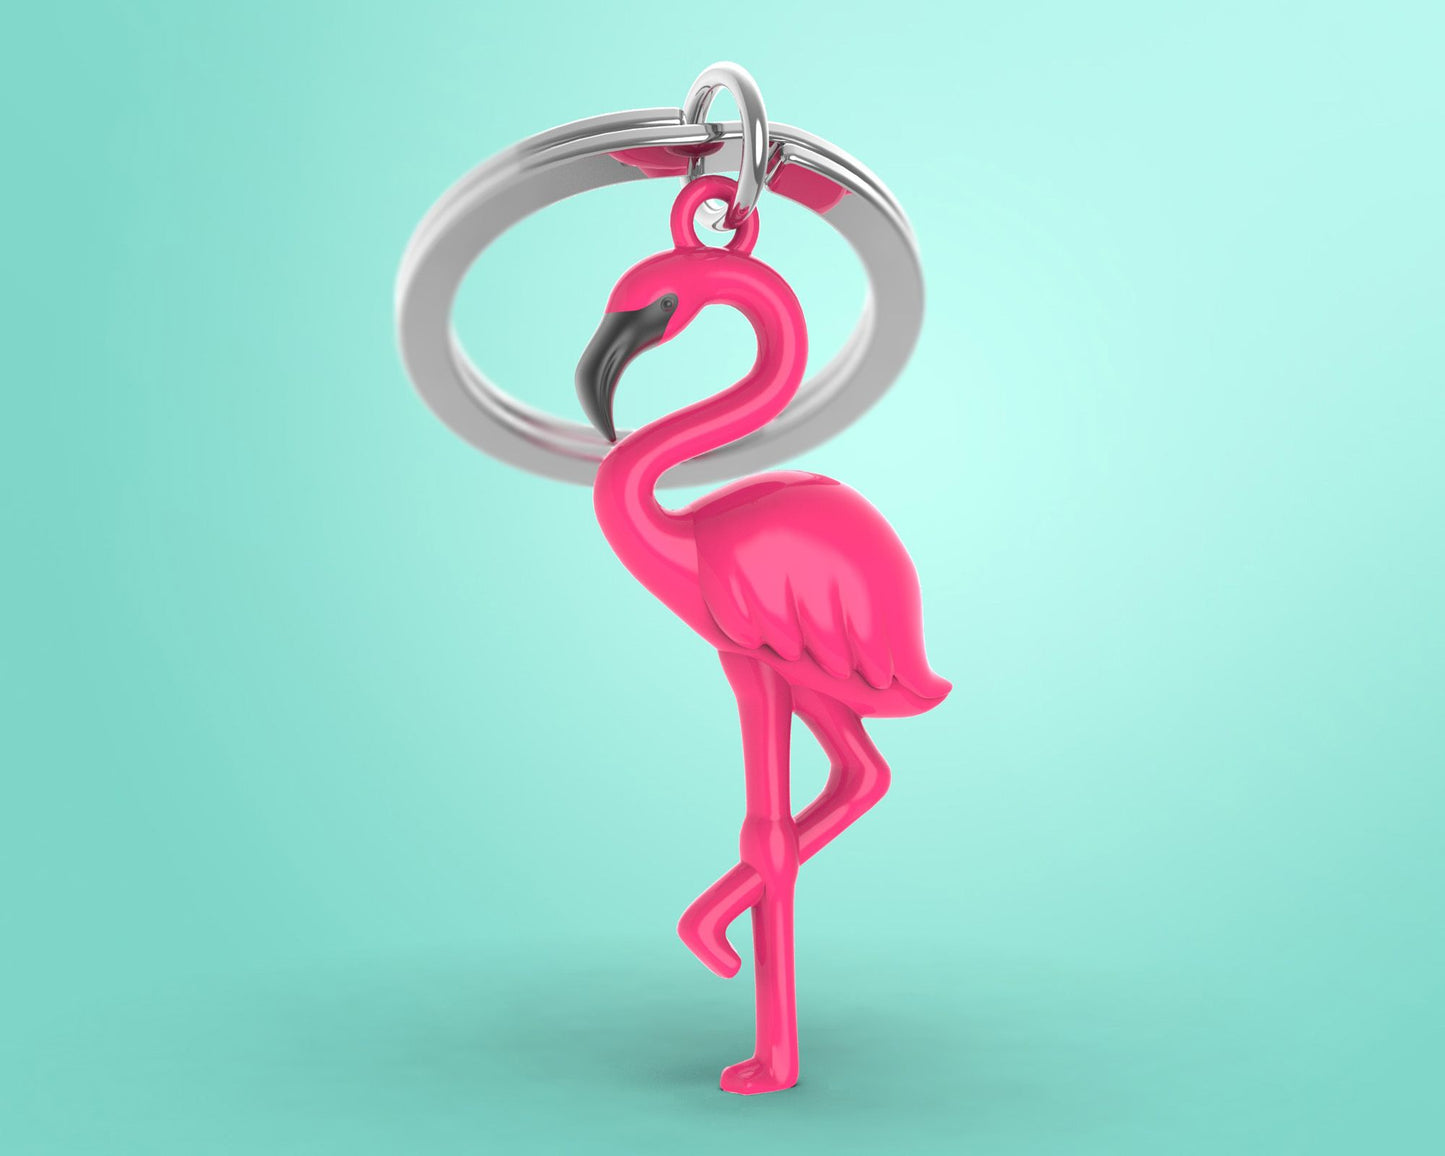 Pink Flamingo key ring